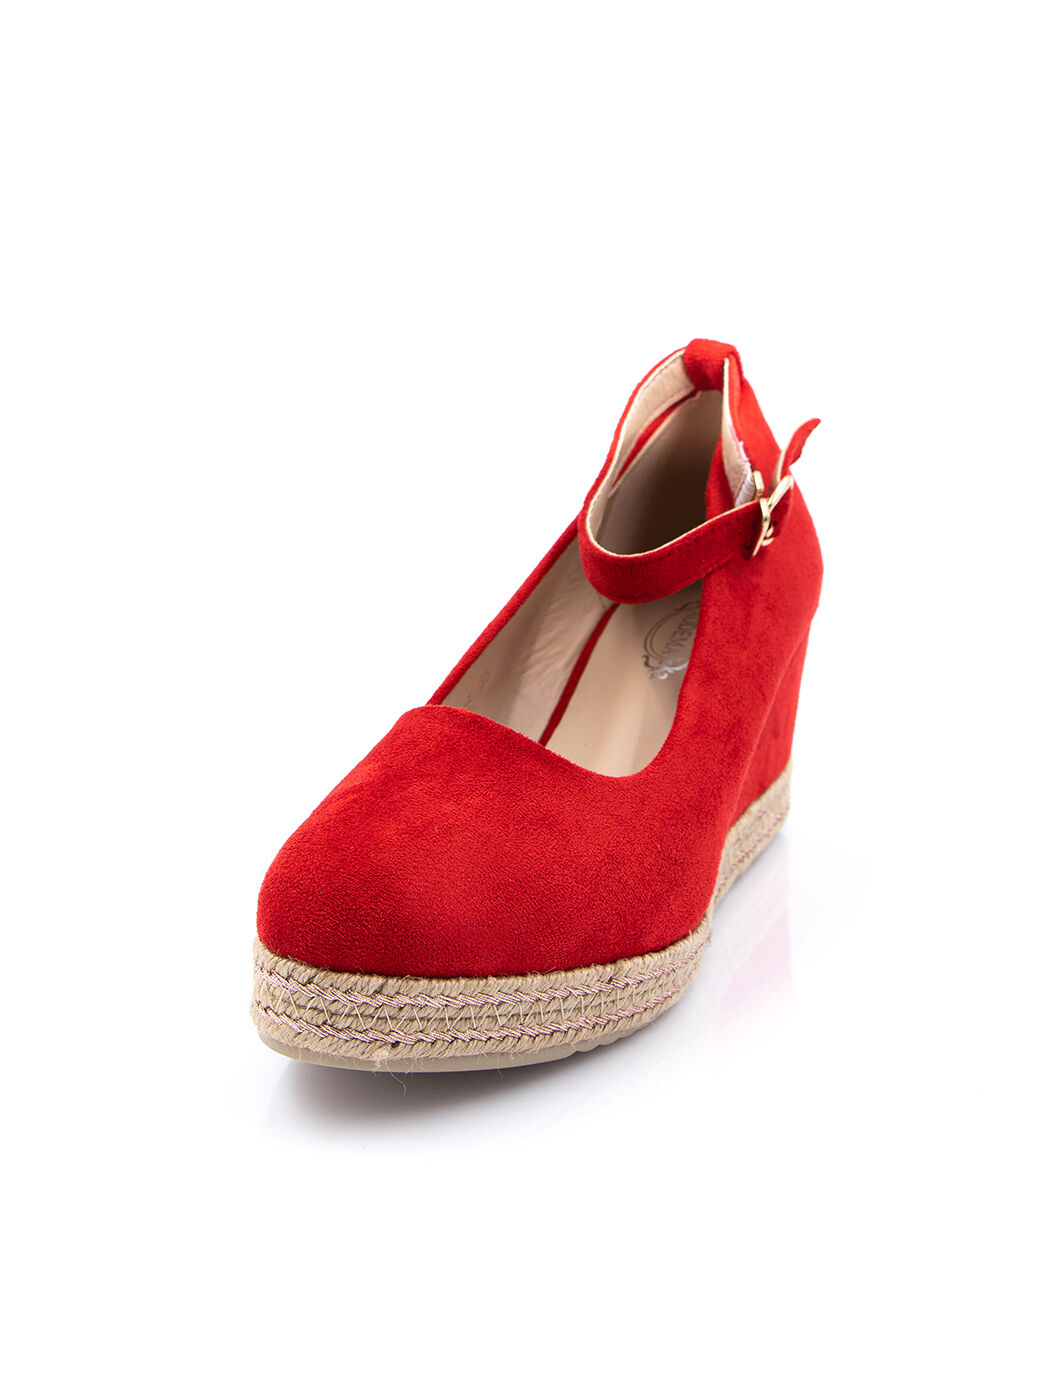 Туфли женские красные экозамша каблук устойчивый демисезон от производителя 4M вид 0